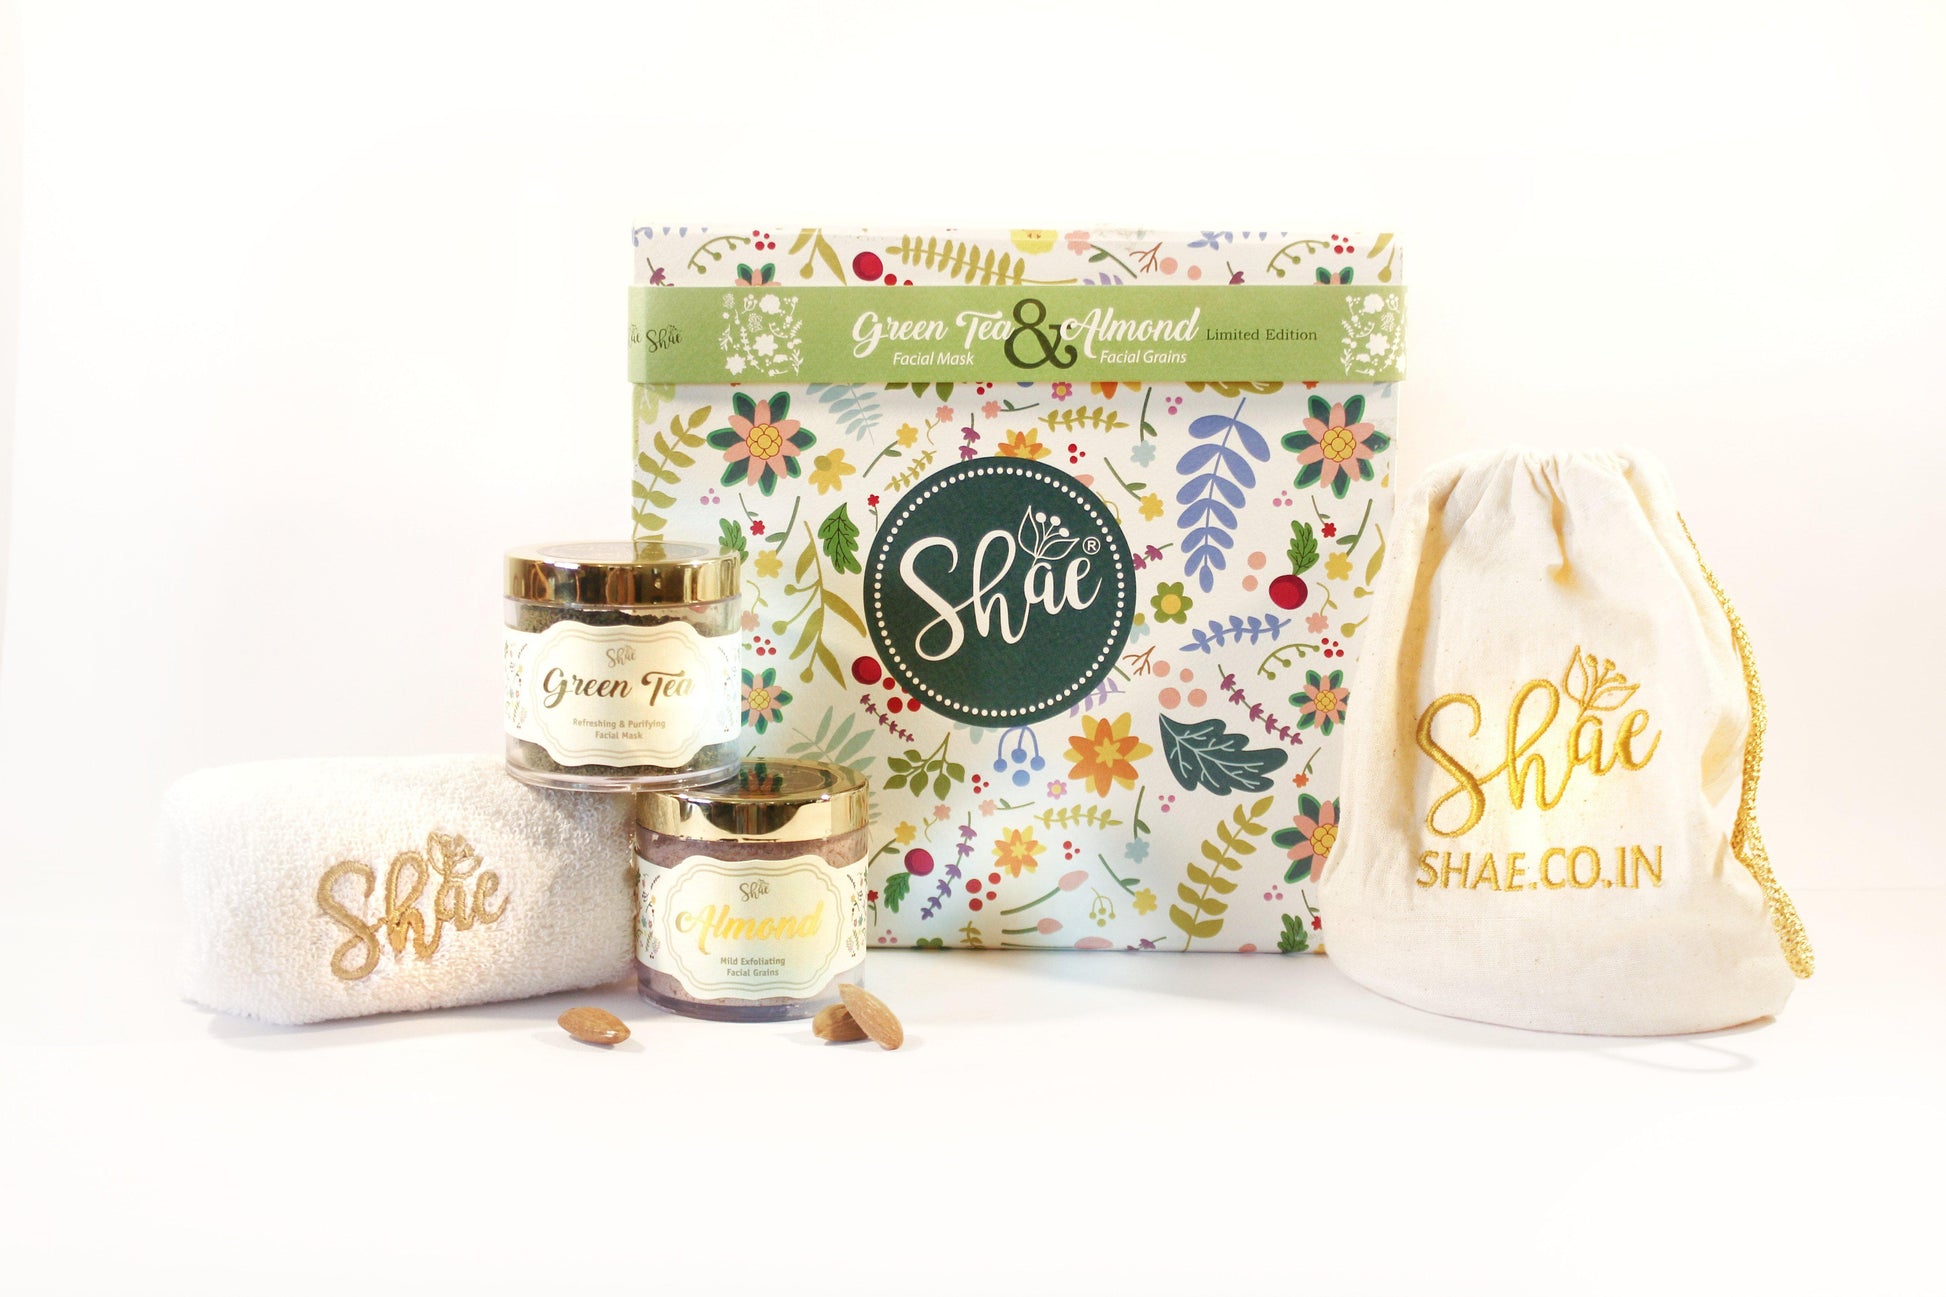 Spa Gift Kit by Shae | Green Tea Facial Mask & Almond Facial Grains - Shae